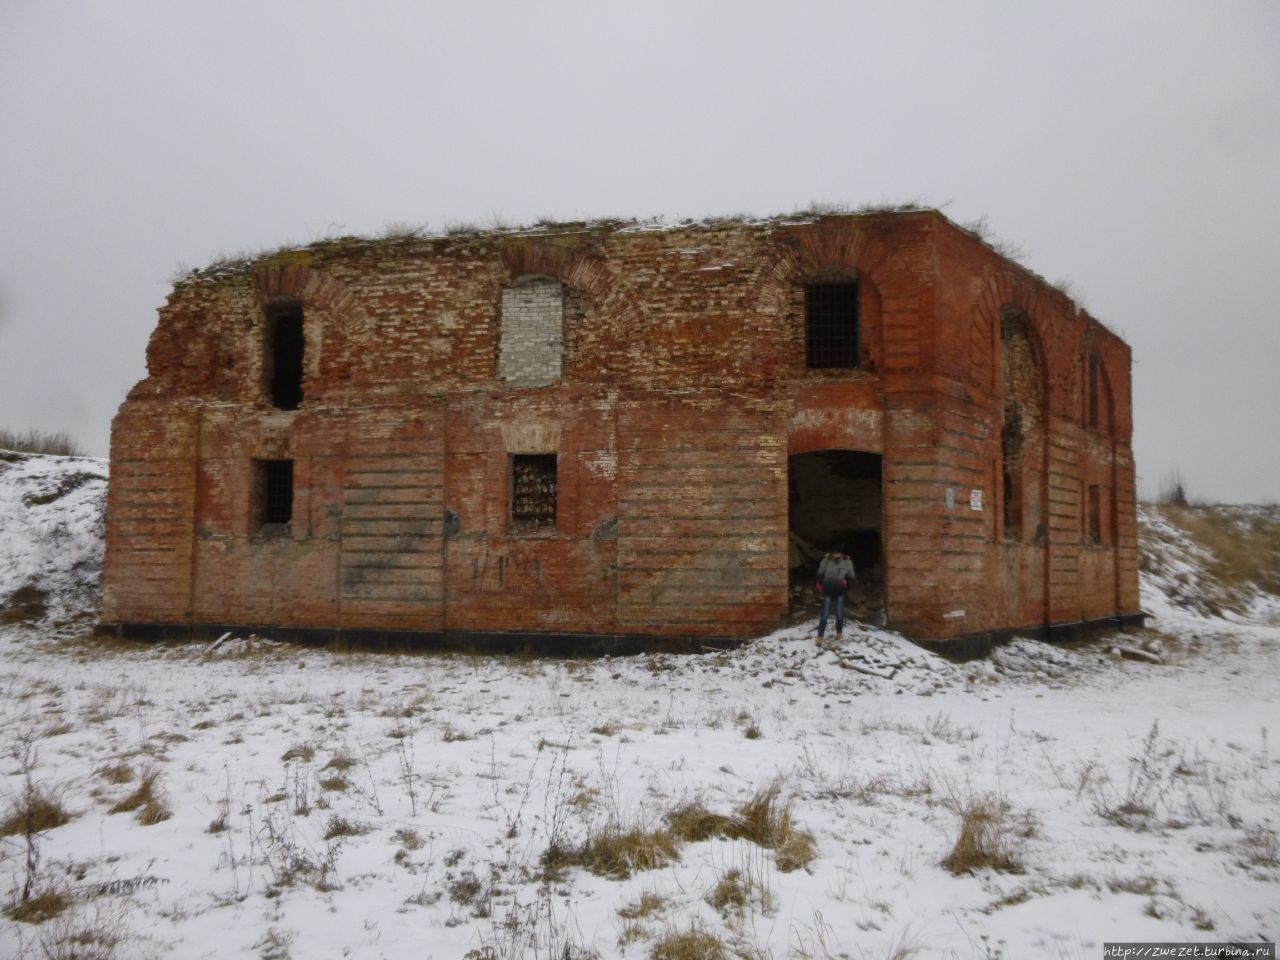 Бобруйская крепость — забытый страж империи Бобруйск, Беларусь